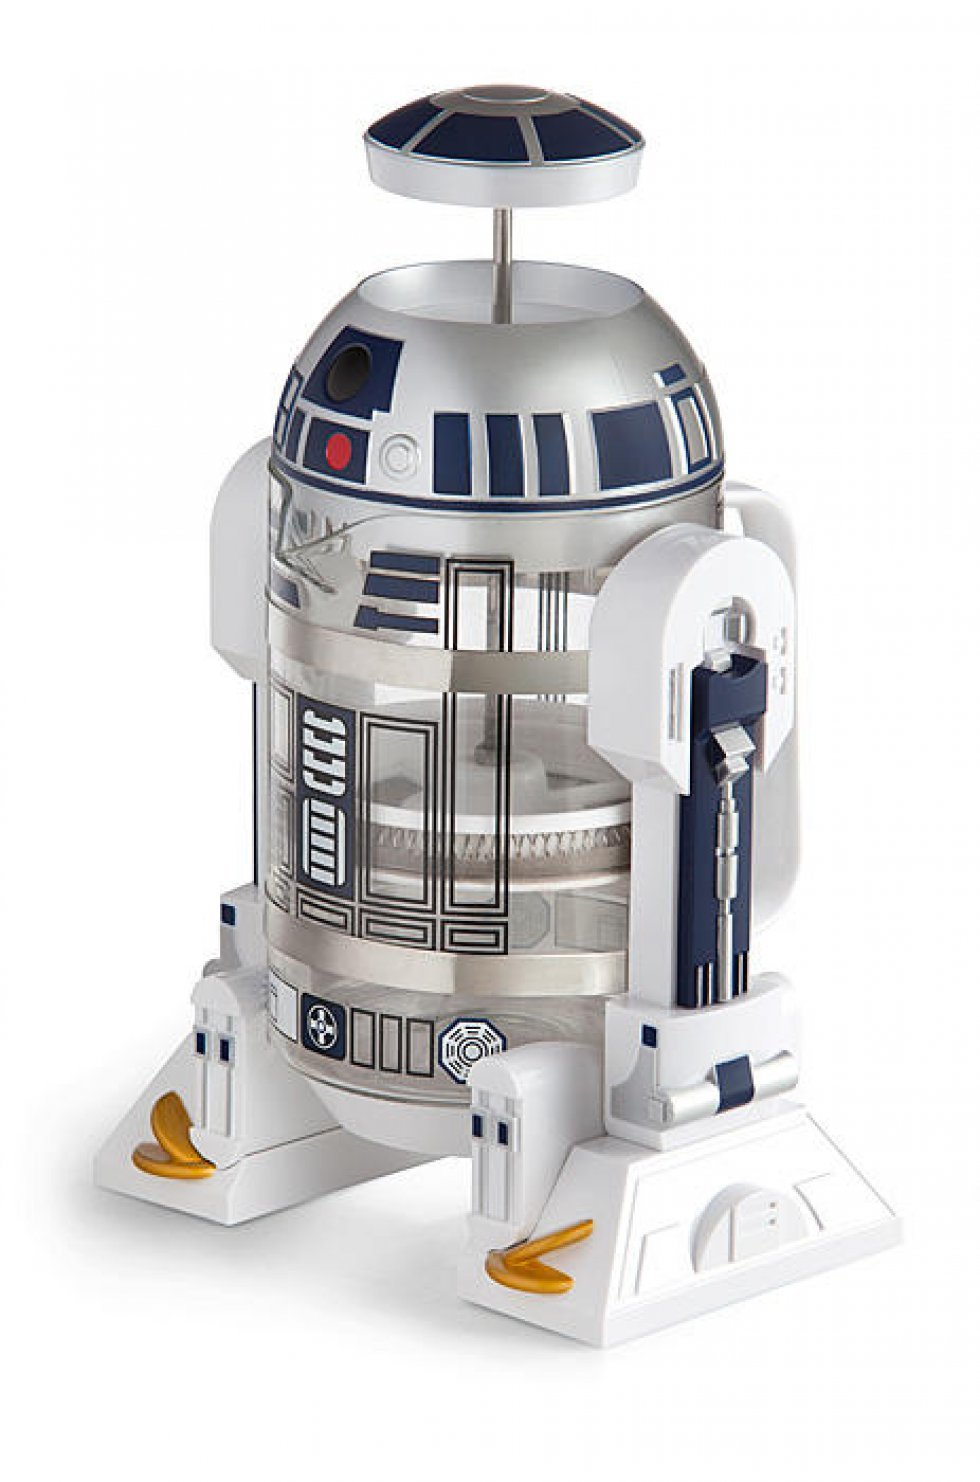 Think Geek - Med R2-D2-stempelkanden får du kræfter som en ægte Jedi af din morgenkaffe